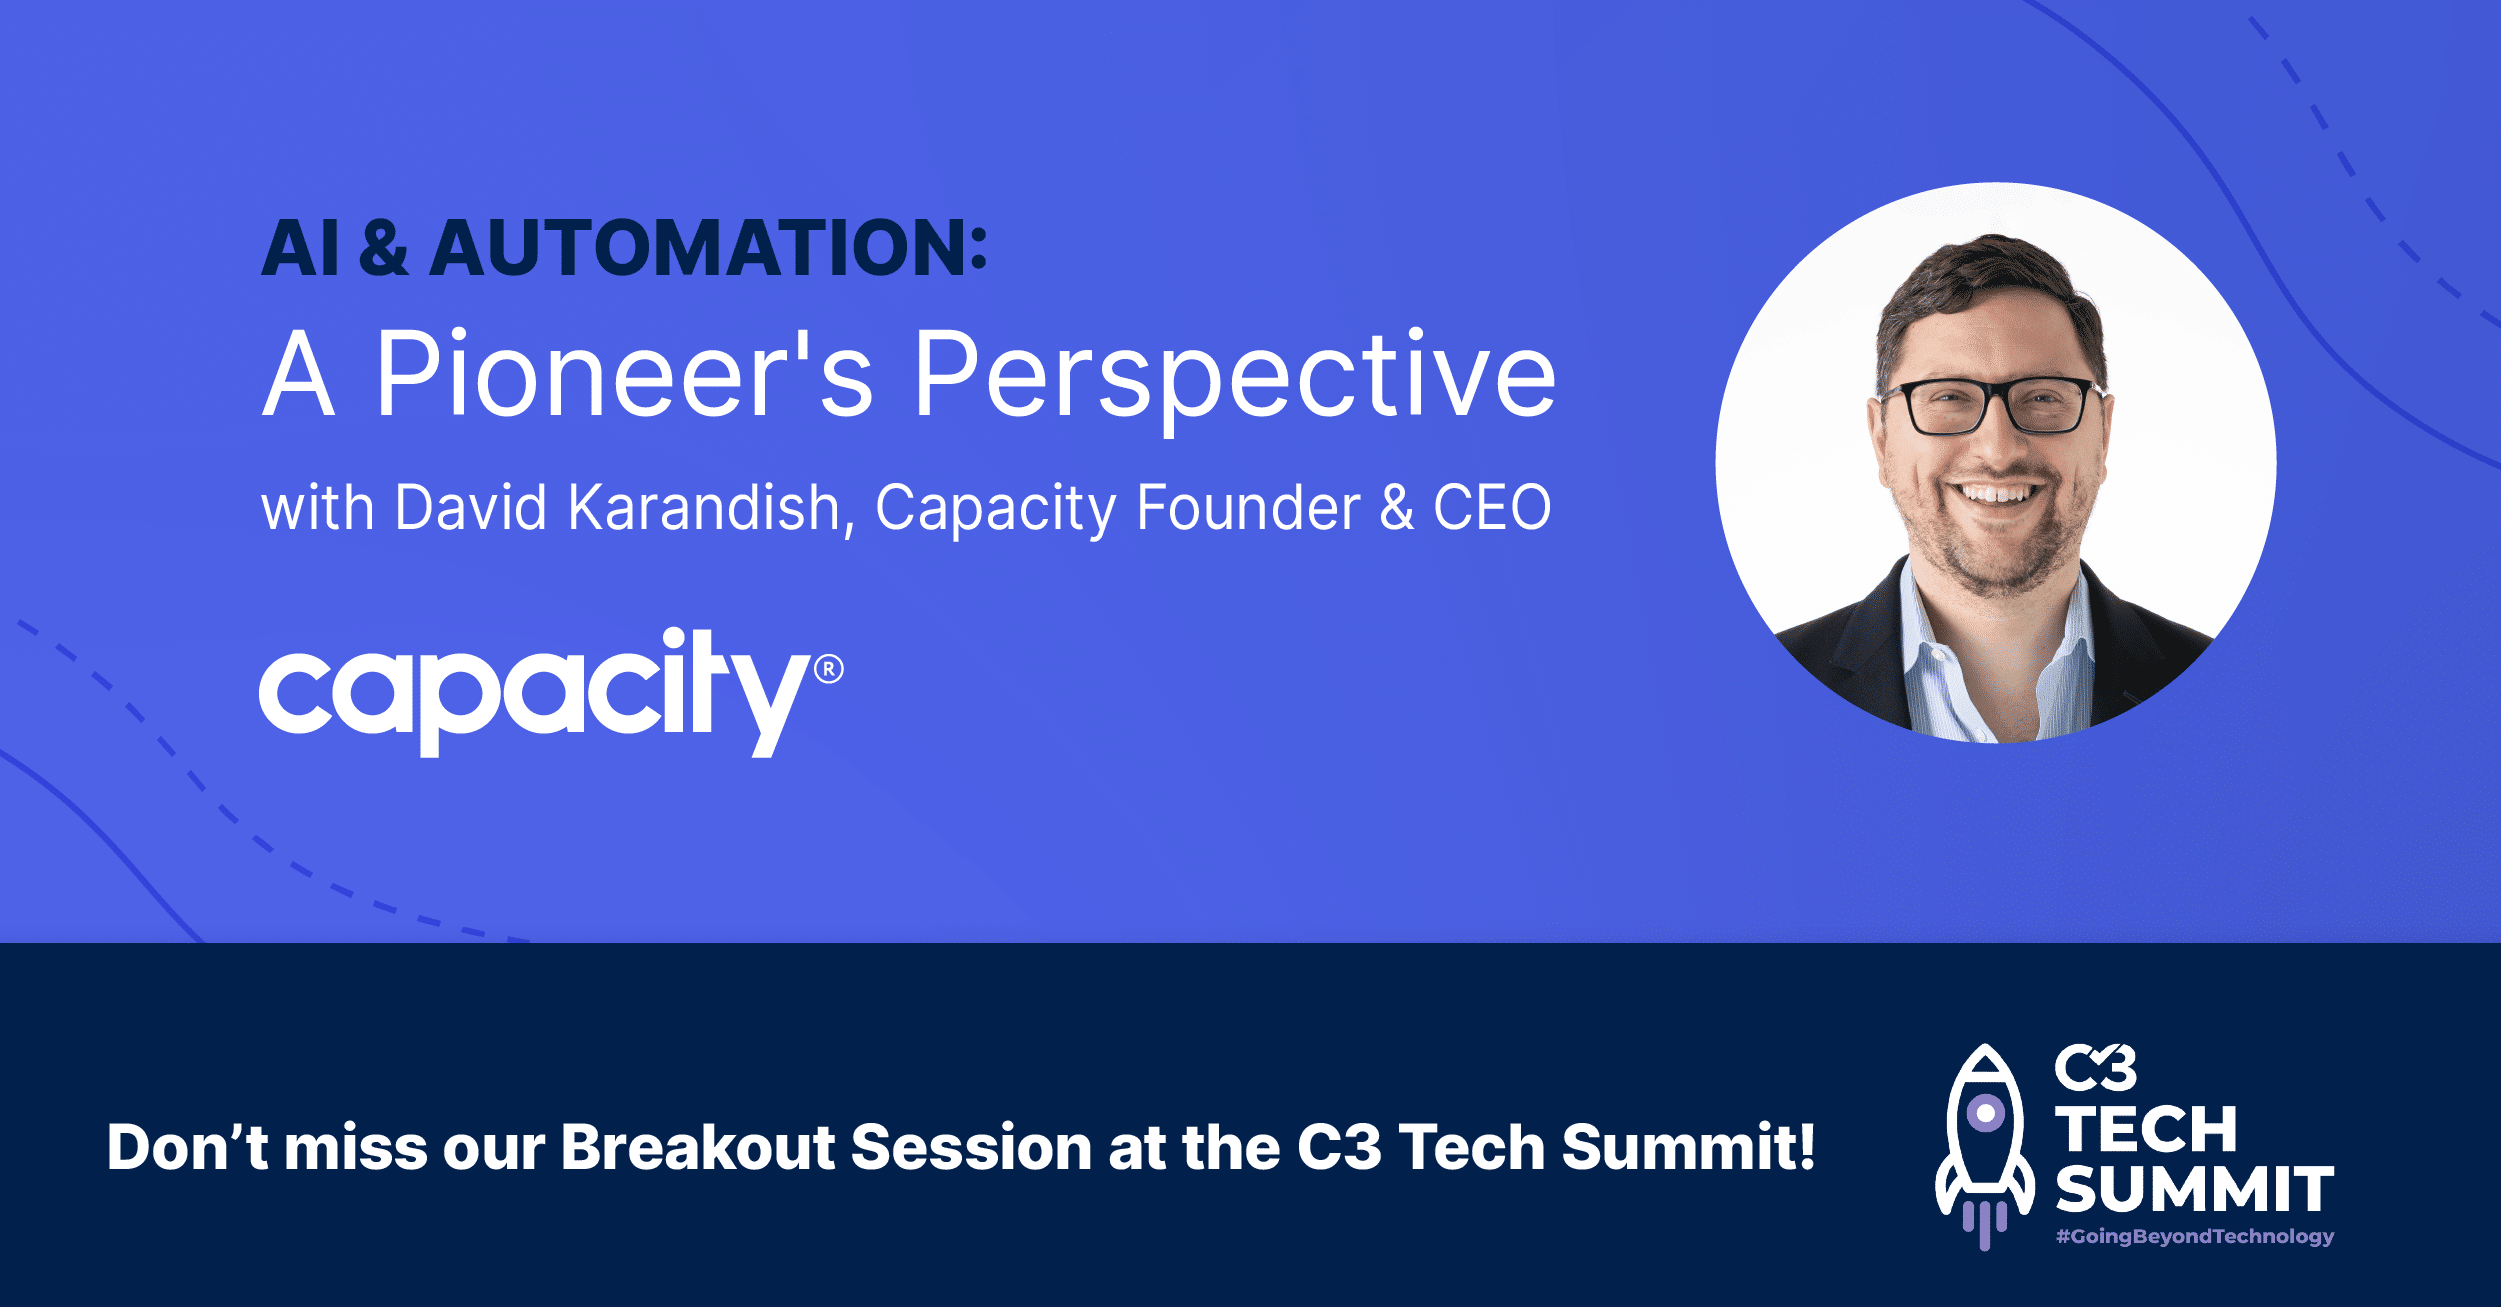 C3 Tech Summit